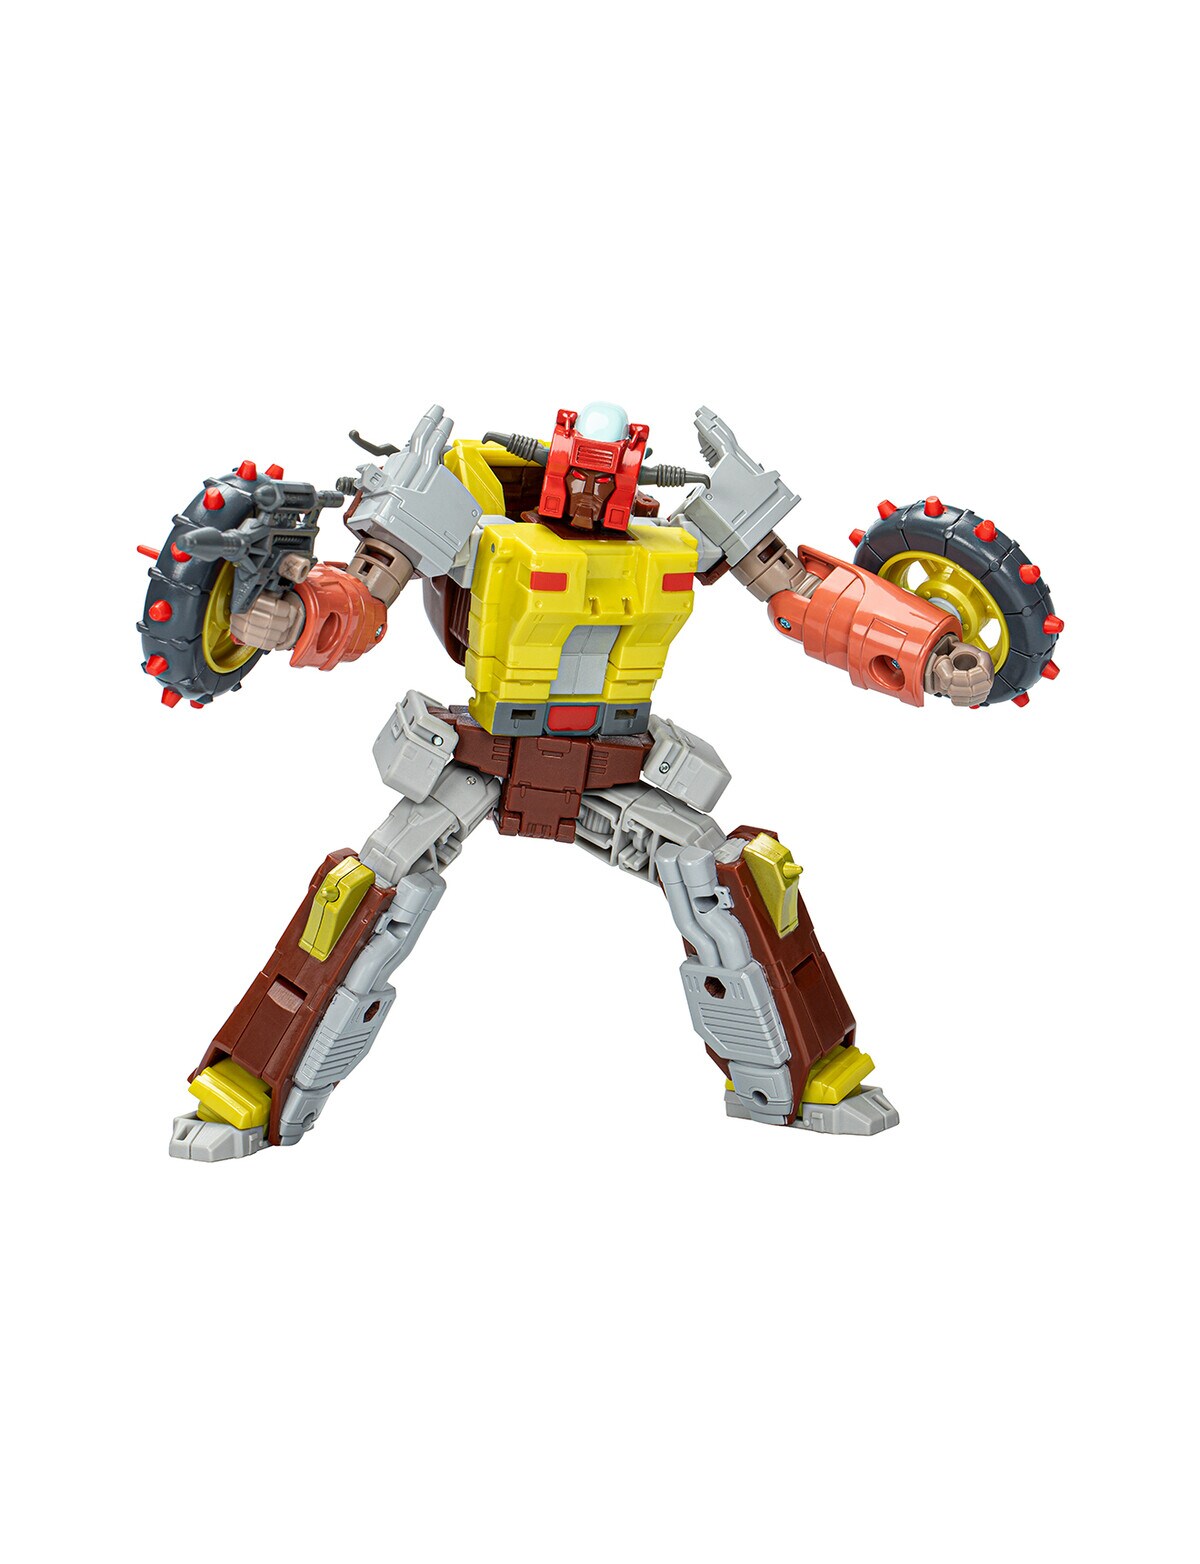 Transformers Studio Series Voyager Figures - Assorted - Action Figures